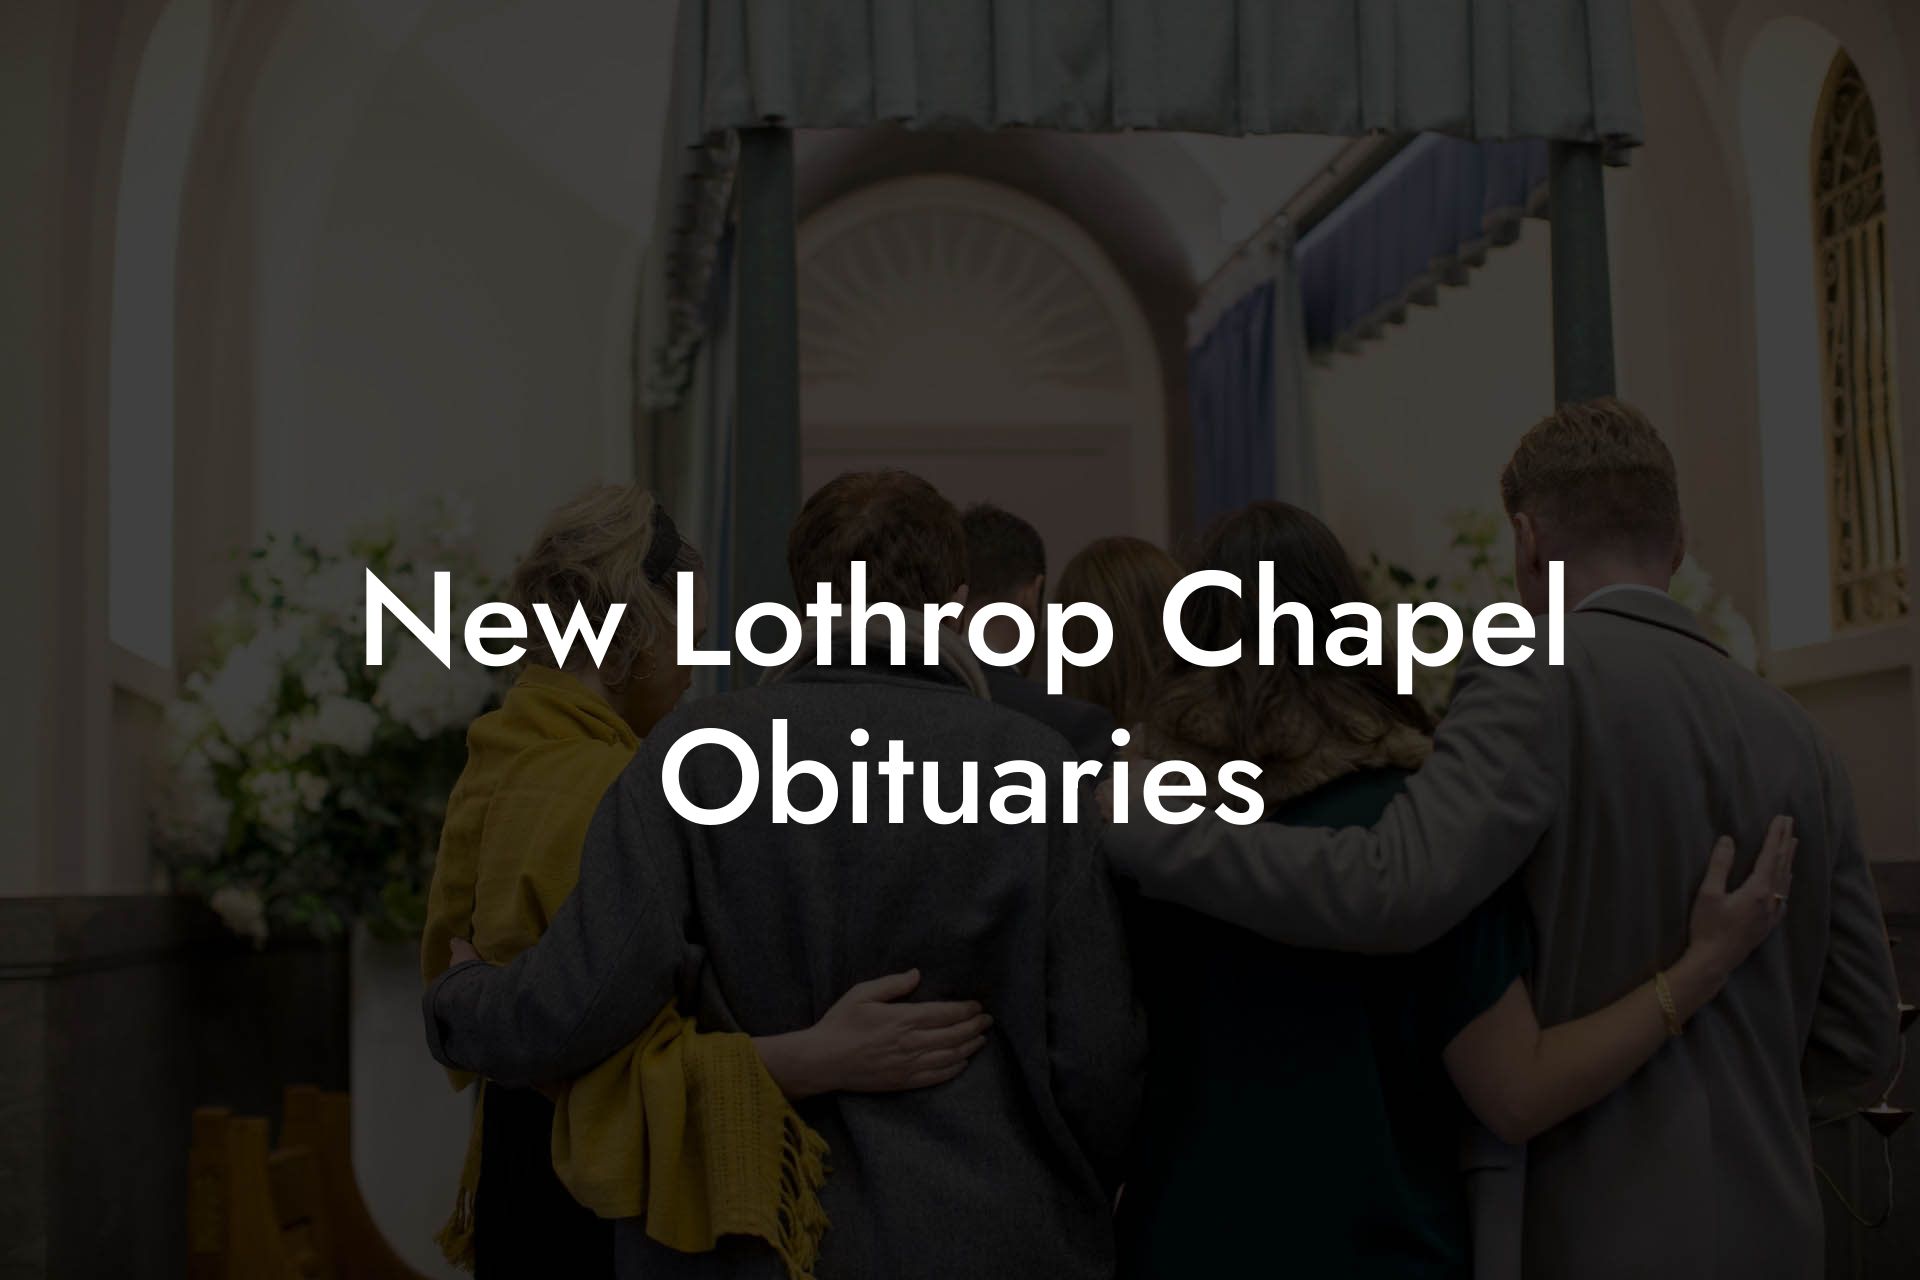 New Lothrop Chapel Obituaries